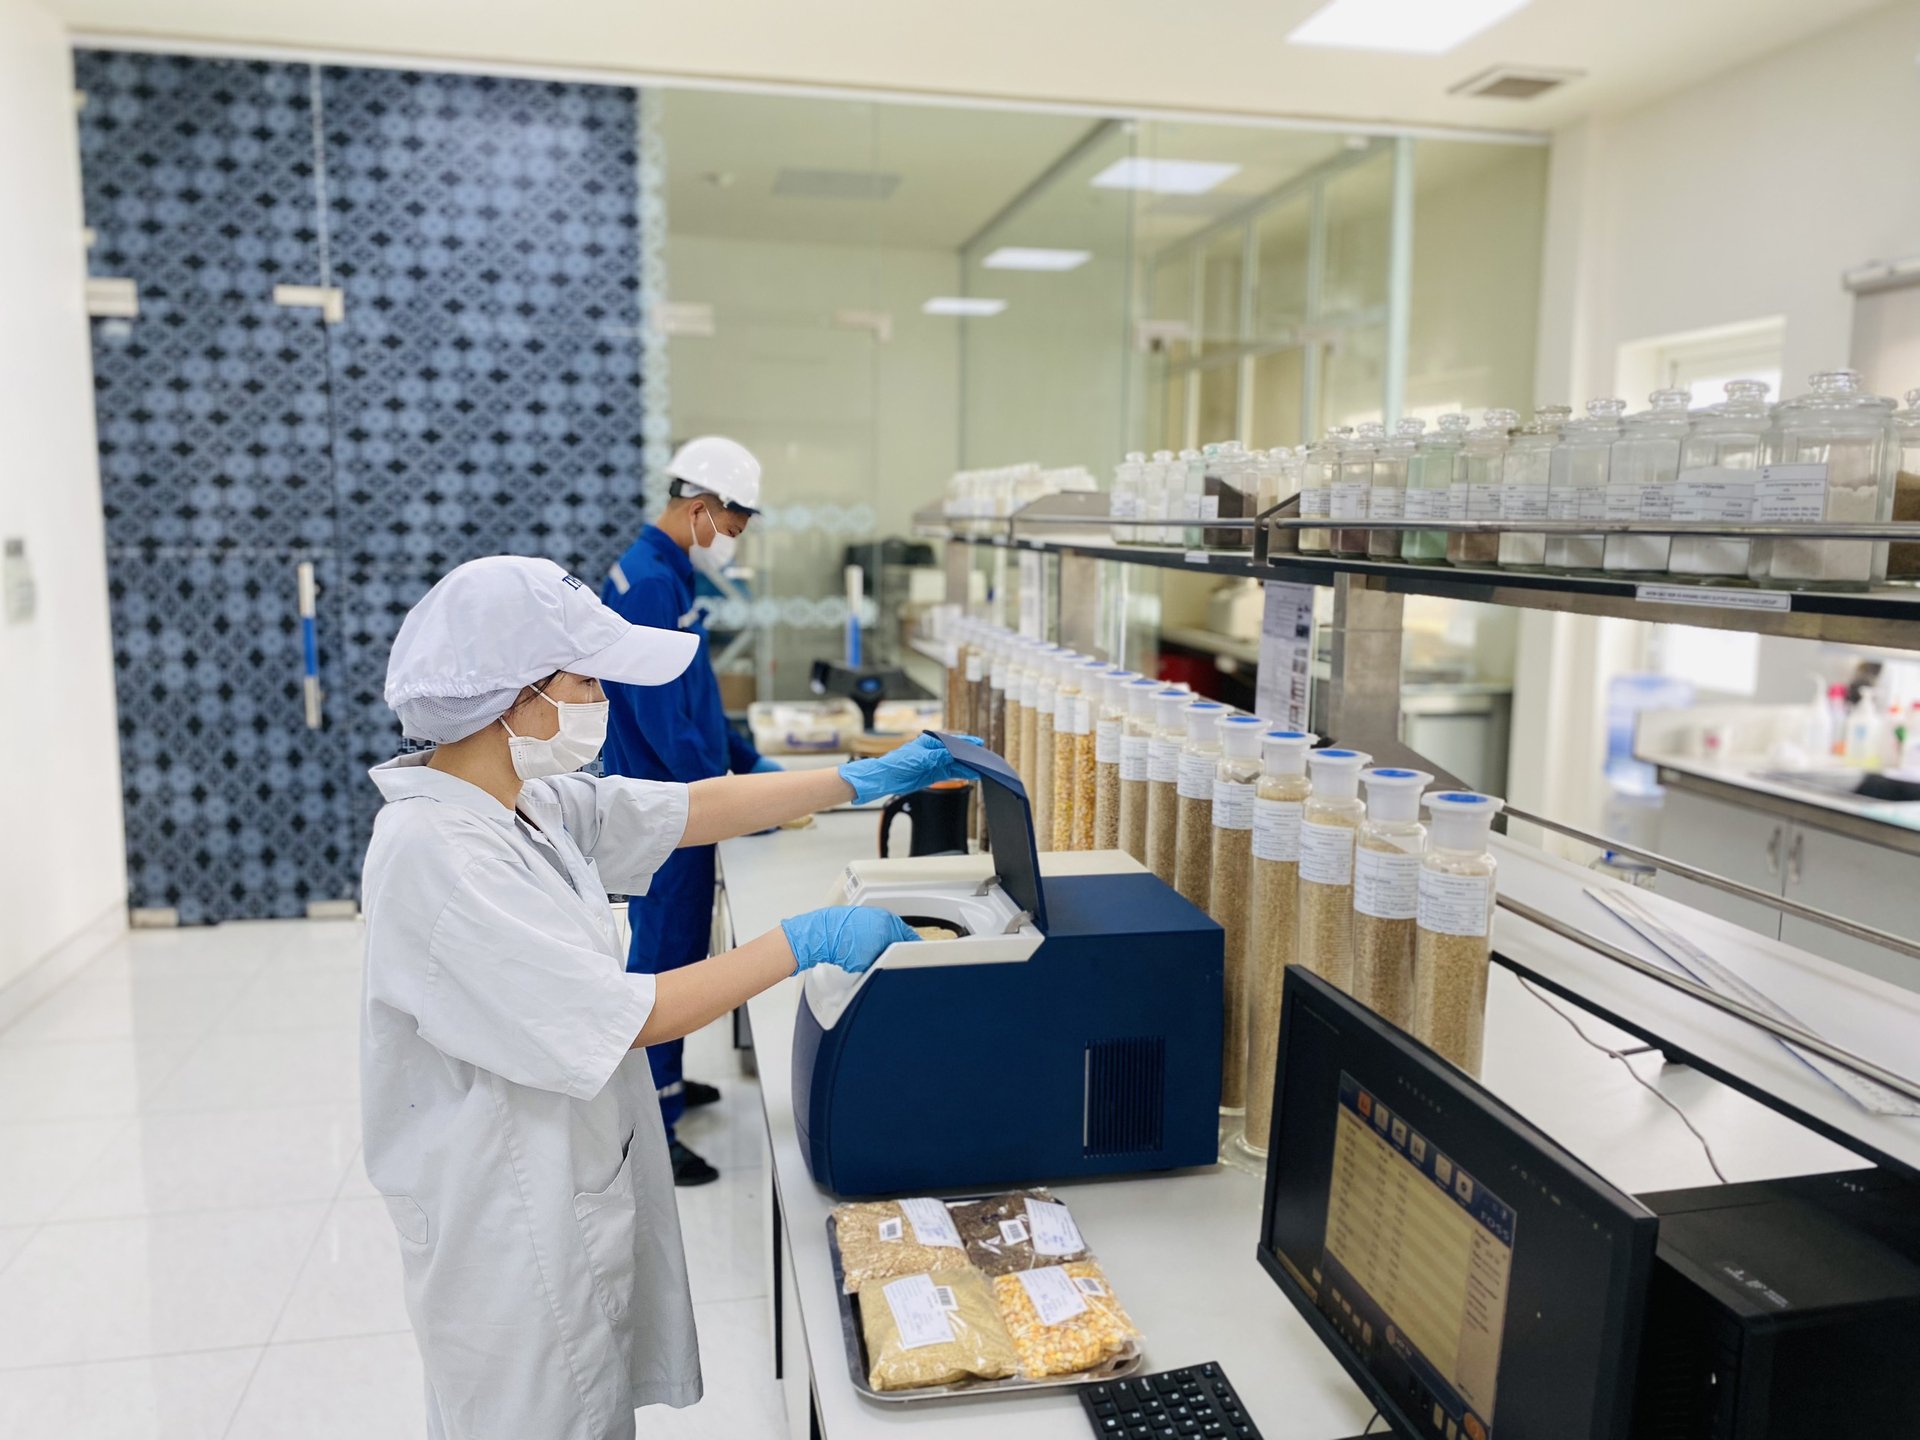 Phòng thí nghiệm tiêu chuẩn ISO 17025 của Trung tâm Thức ăn và Dinh dưỡng TH đang vận hành máy quang phổ cận hồng ngoại NIR phân tích thực phẩm hiện đại bậc nhất thế giới.